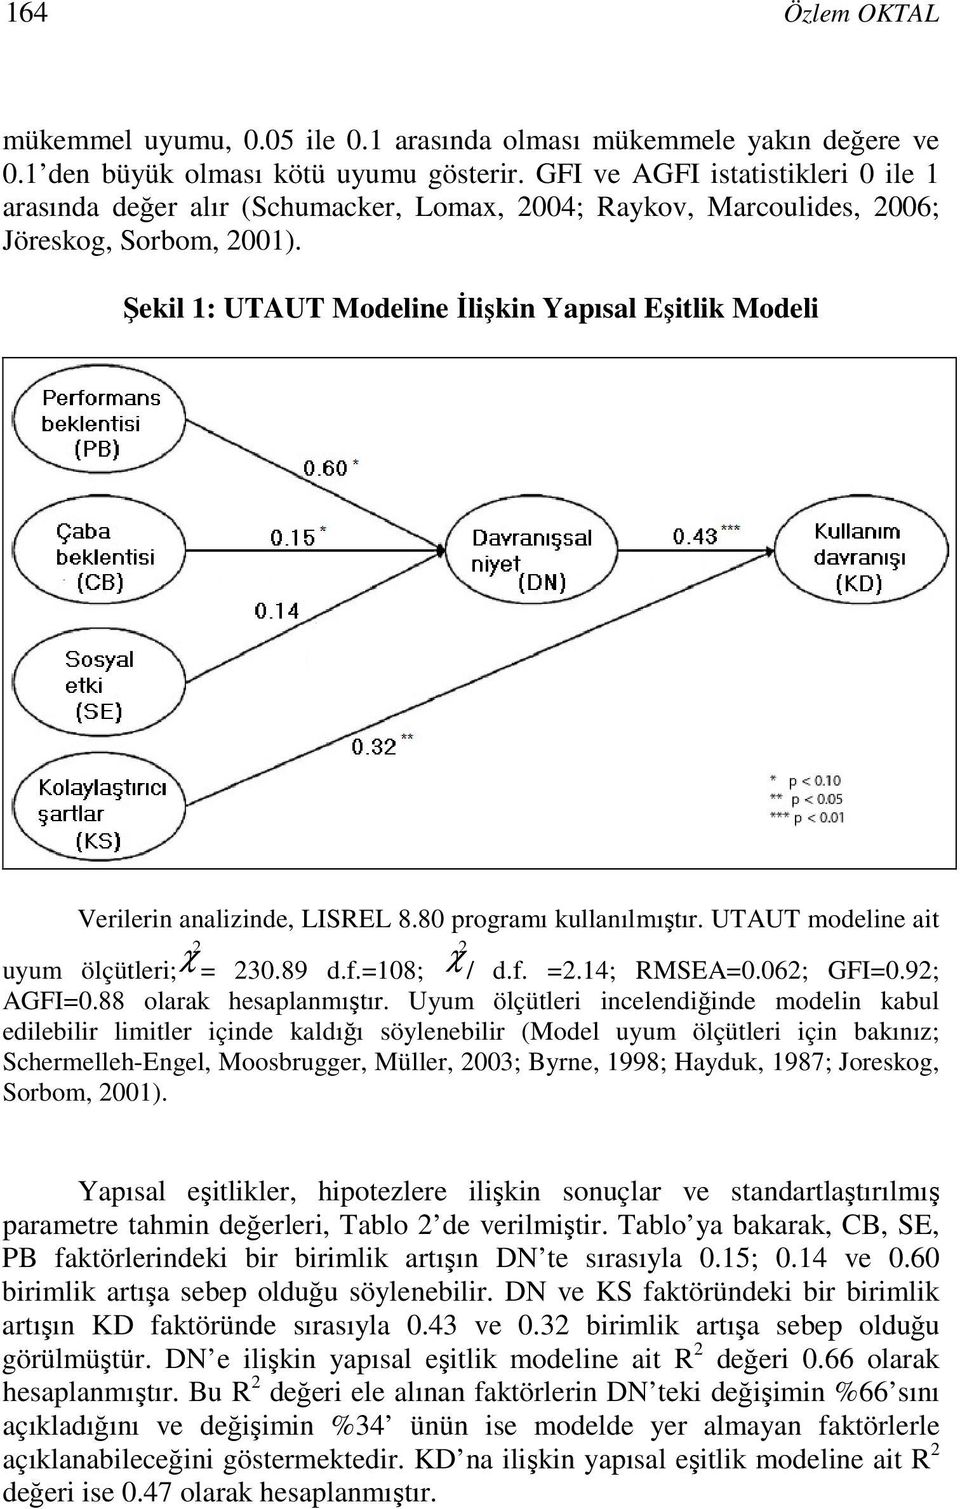 Şekil 1: UTAUT Modeline İlişkin Yapısal Eşitlik Modeli Verilerin analizinde, LISREL 8.80 programı kullanılmıştır. UTAUT modeline ait 2 2 uyum ölçütleri; χ = 230.89 d.f.=108; χ / d.f. =2.14; RMSEA=0.